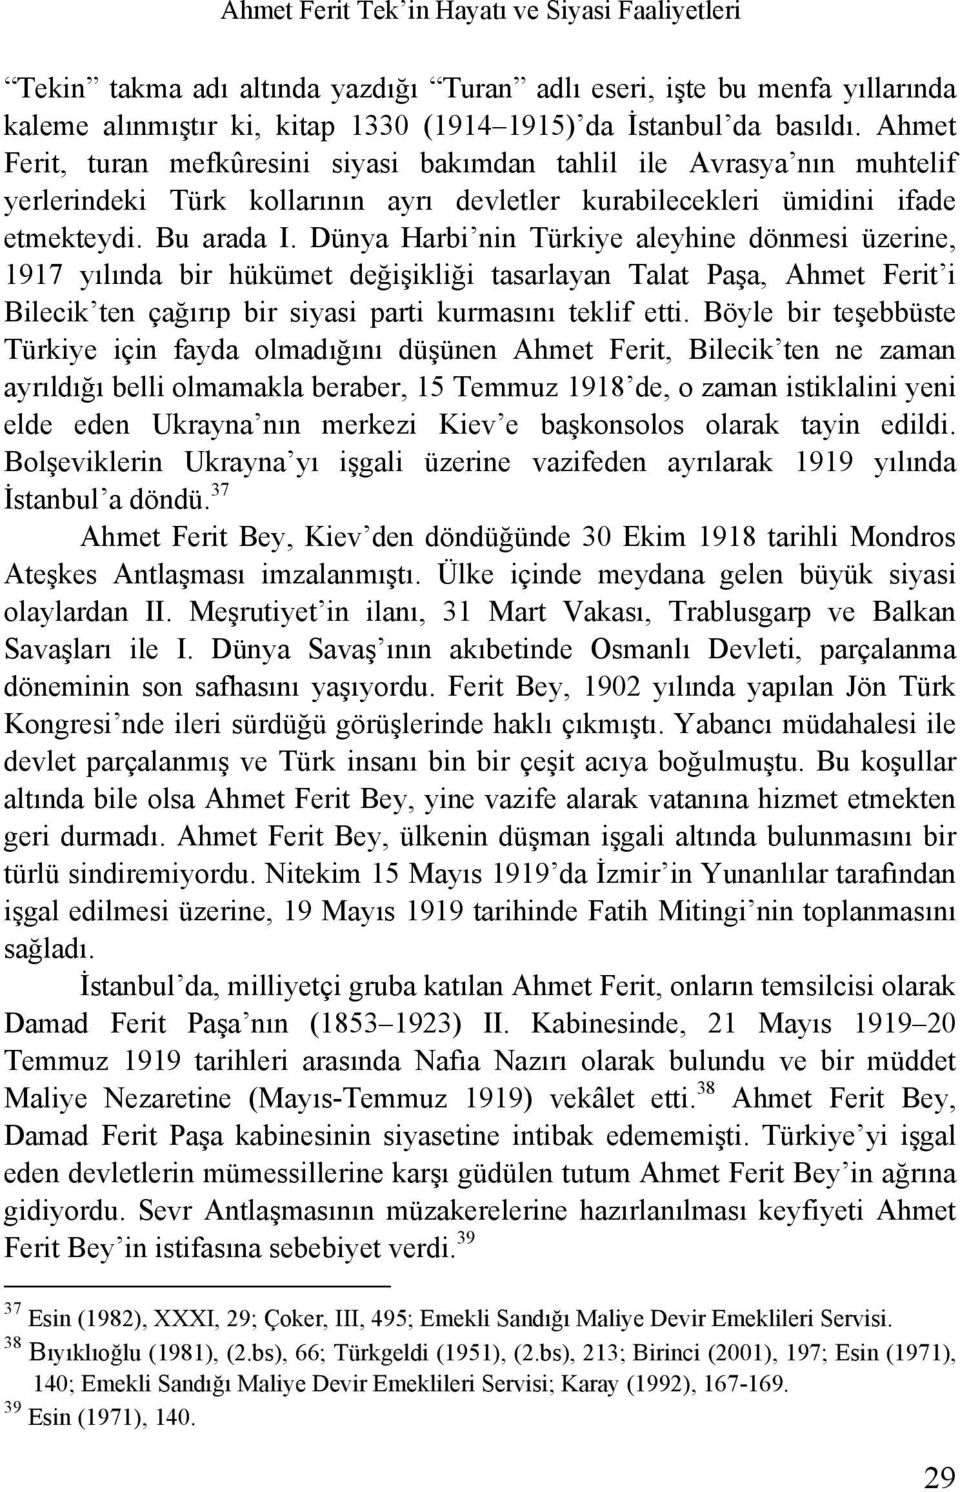 Dünya Harbi nin Türkiye aleyhine dönmesi üzerine, 1917 yılında bir hükümet değişikliği tasarlayan Talat Paşa, Ahmet Ferit i Bilecik ten çağırıp bir siyasi parti kurmasını teklif etti.